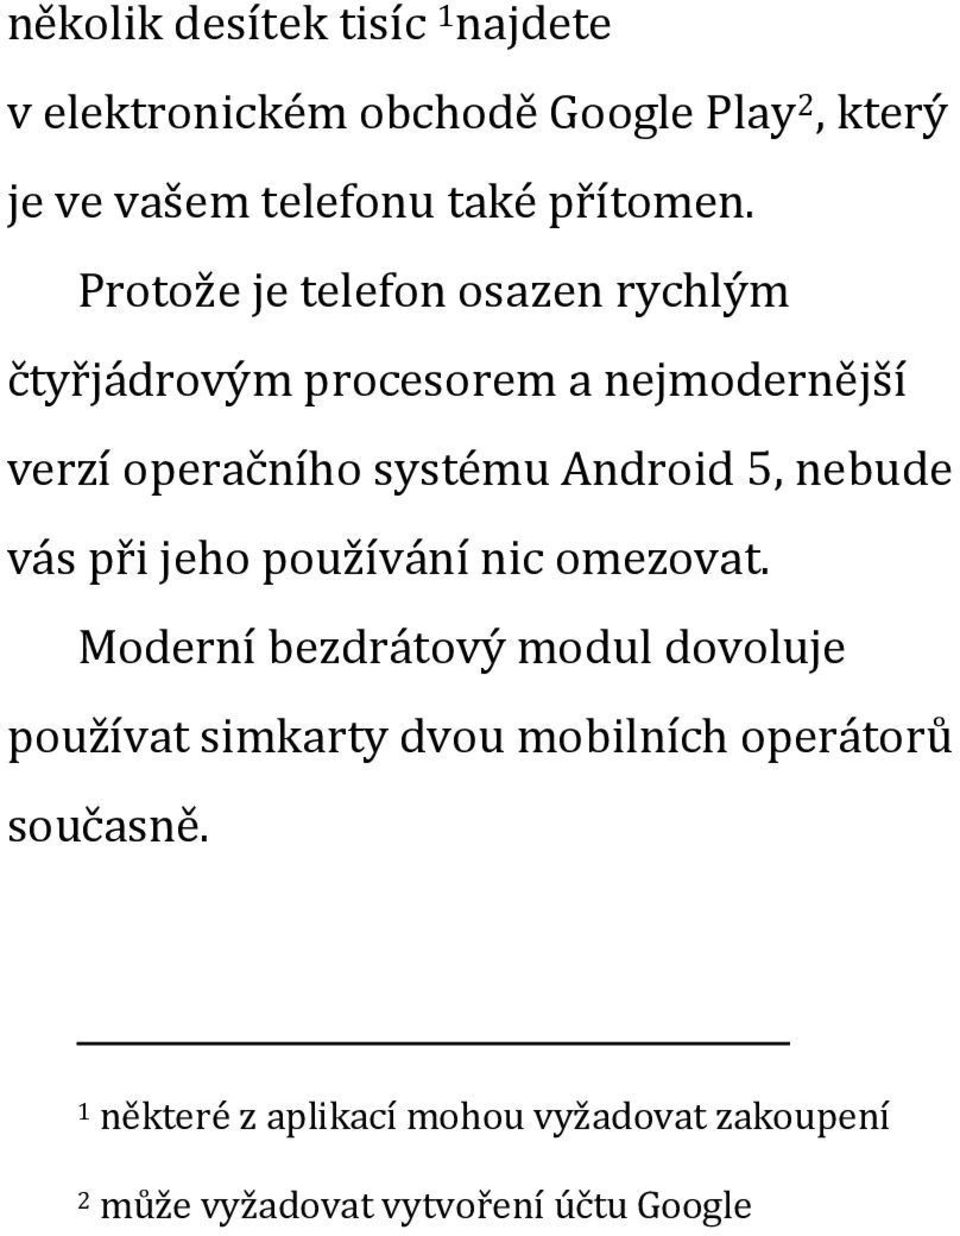 Protože je telefon osazen rychlým čtyřjádrovým procesorem a nejmodernější verzí operačního systému Android 5,